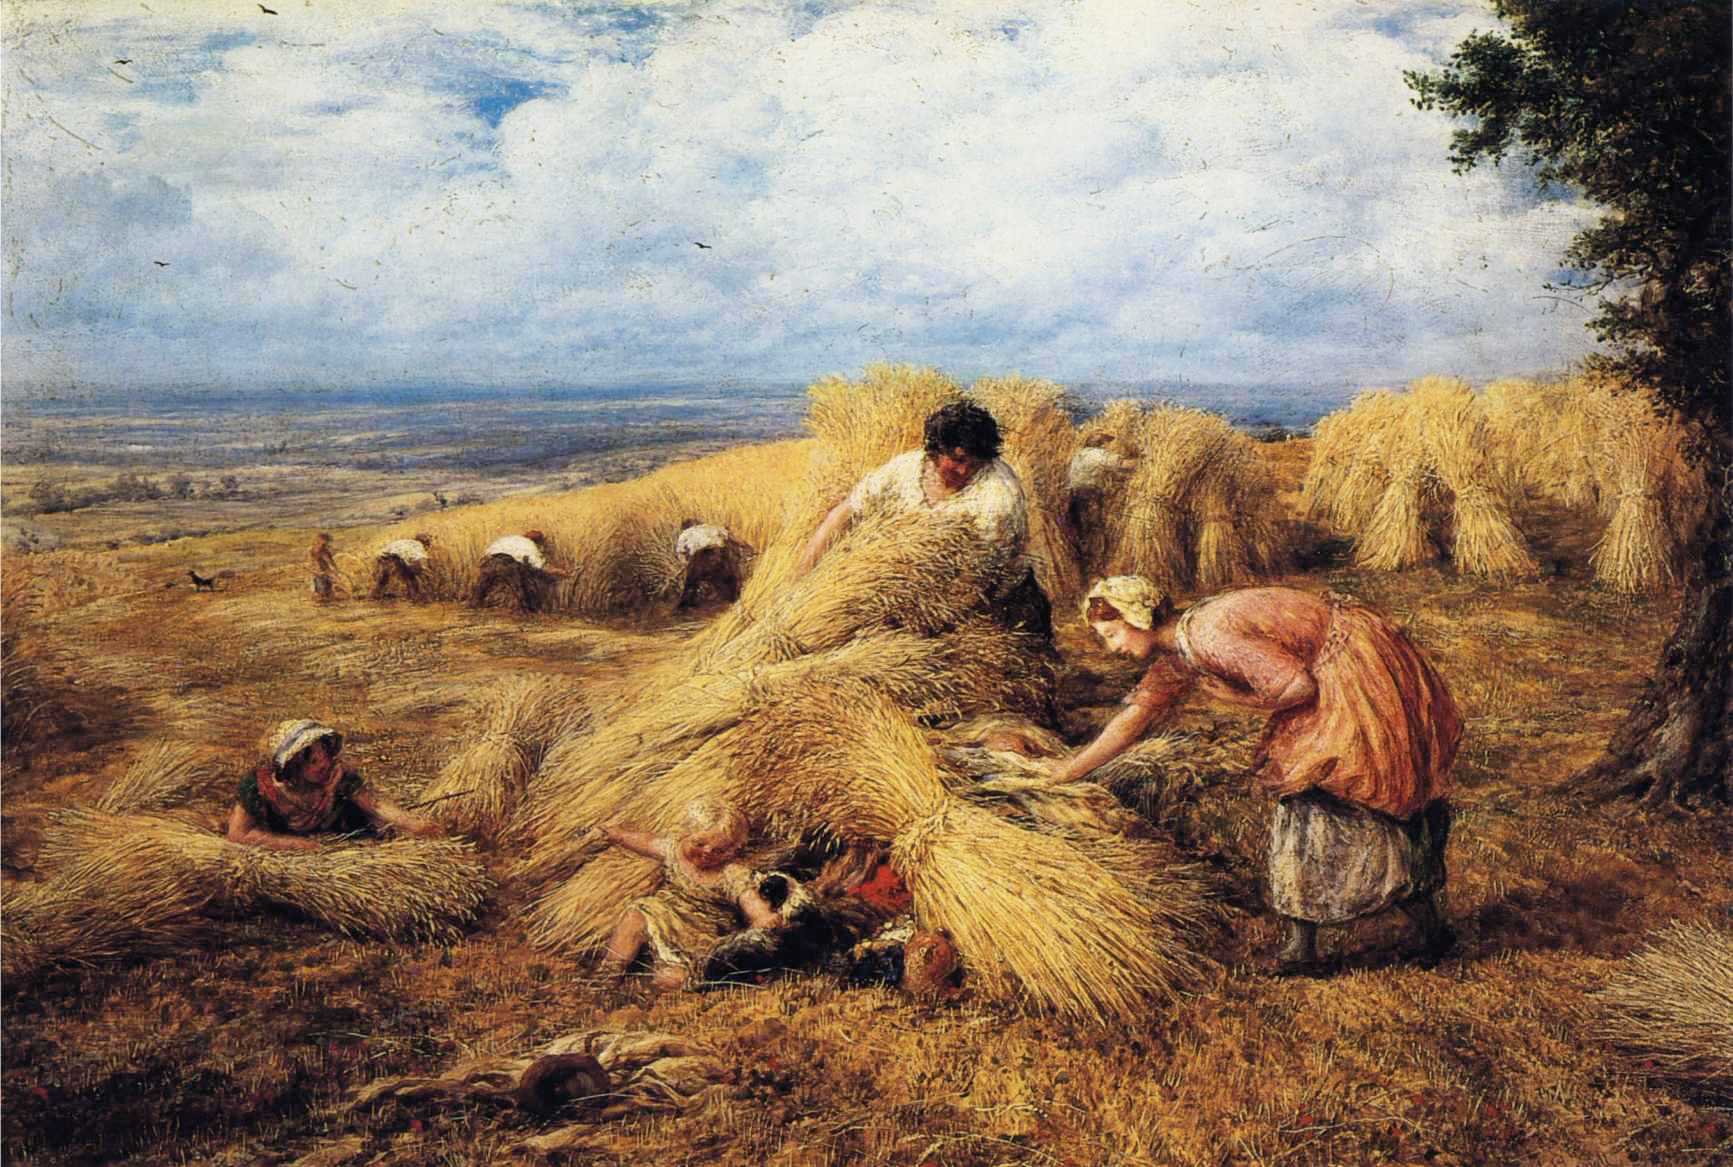 John LInnell. "The Harves Cradle" (1859)